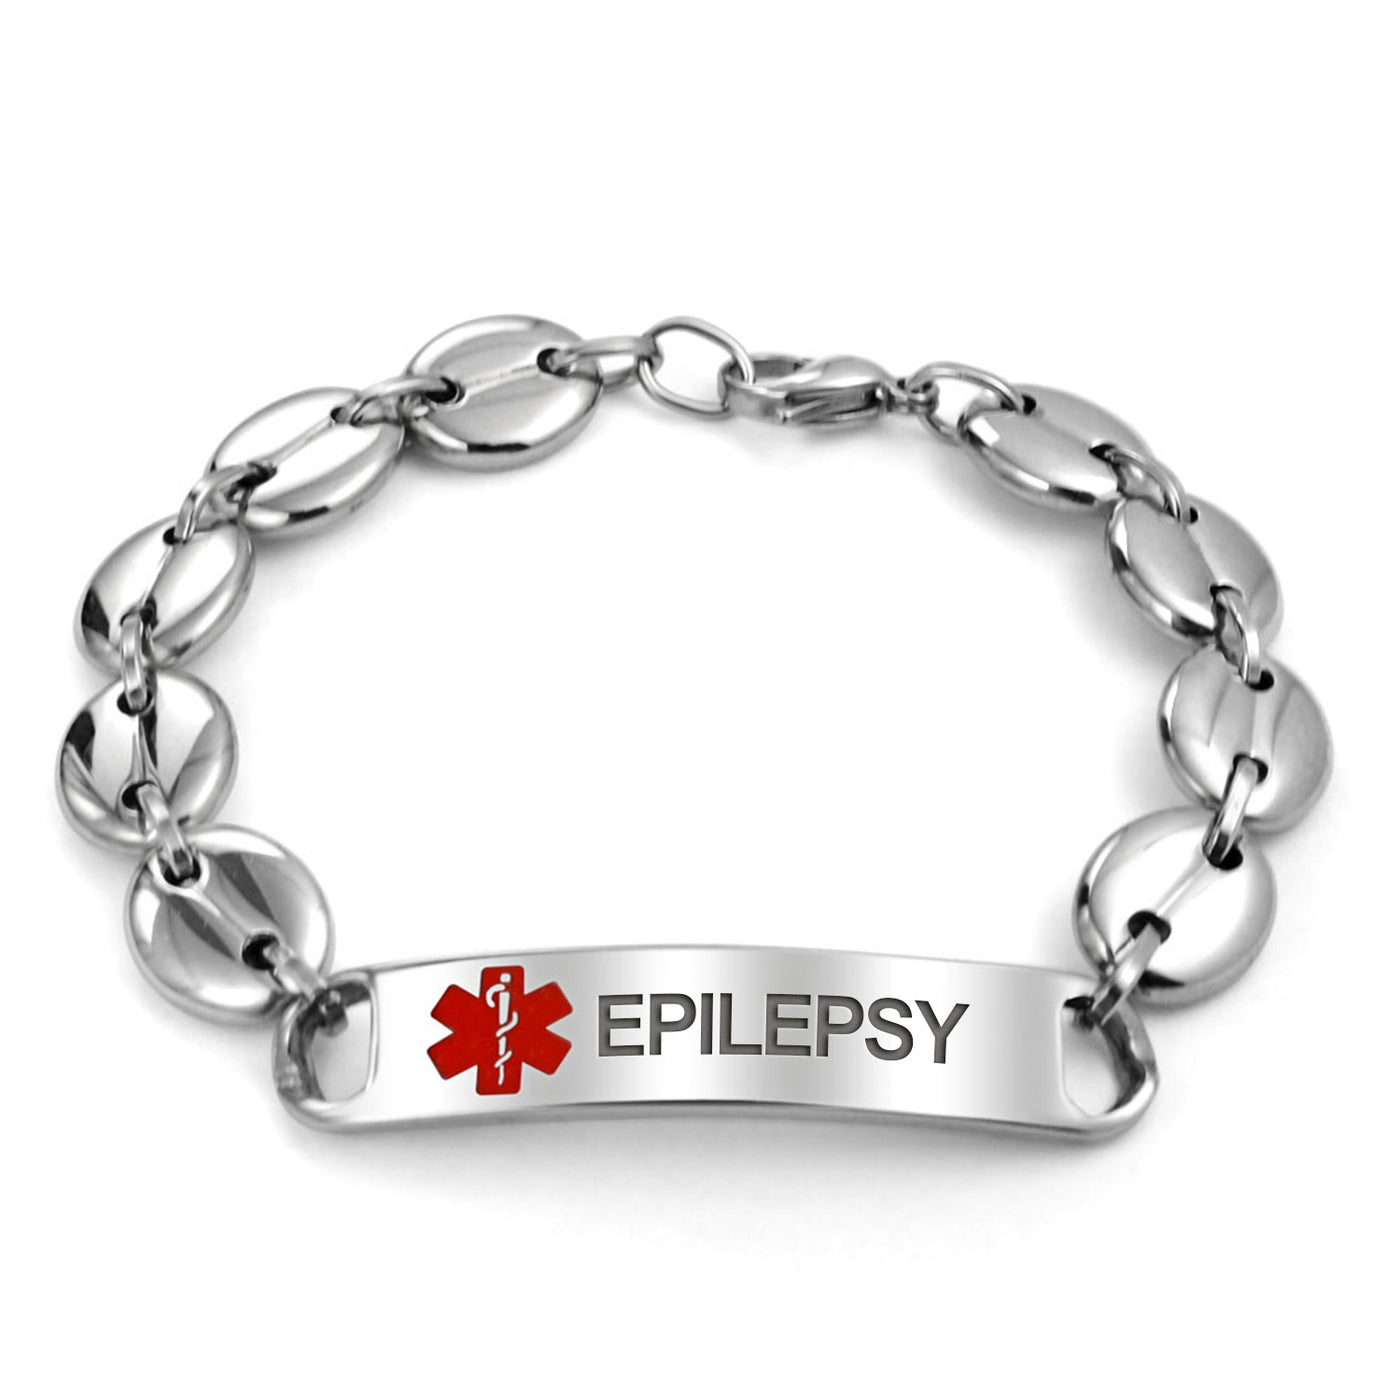 Epilepsy | Image2